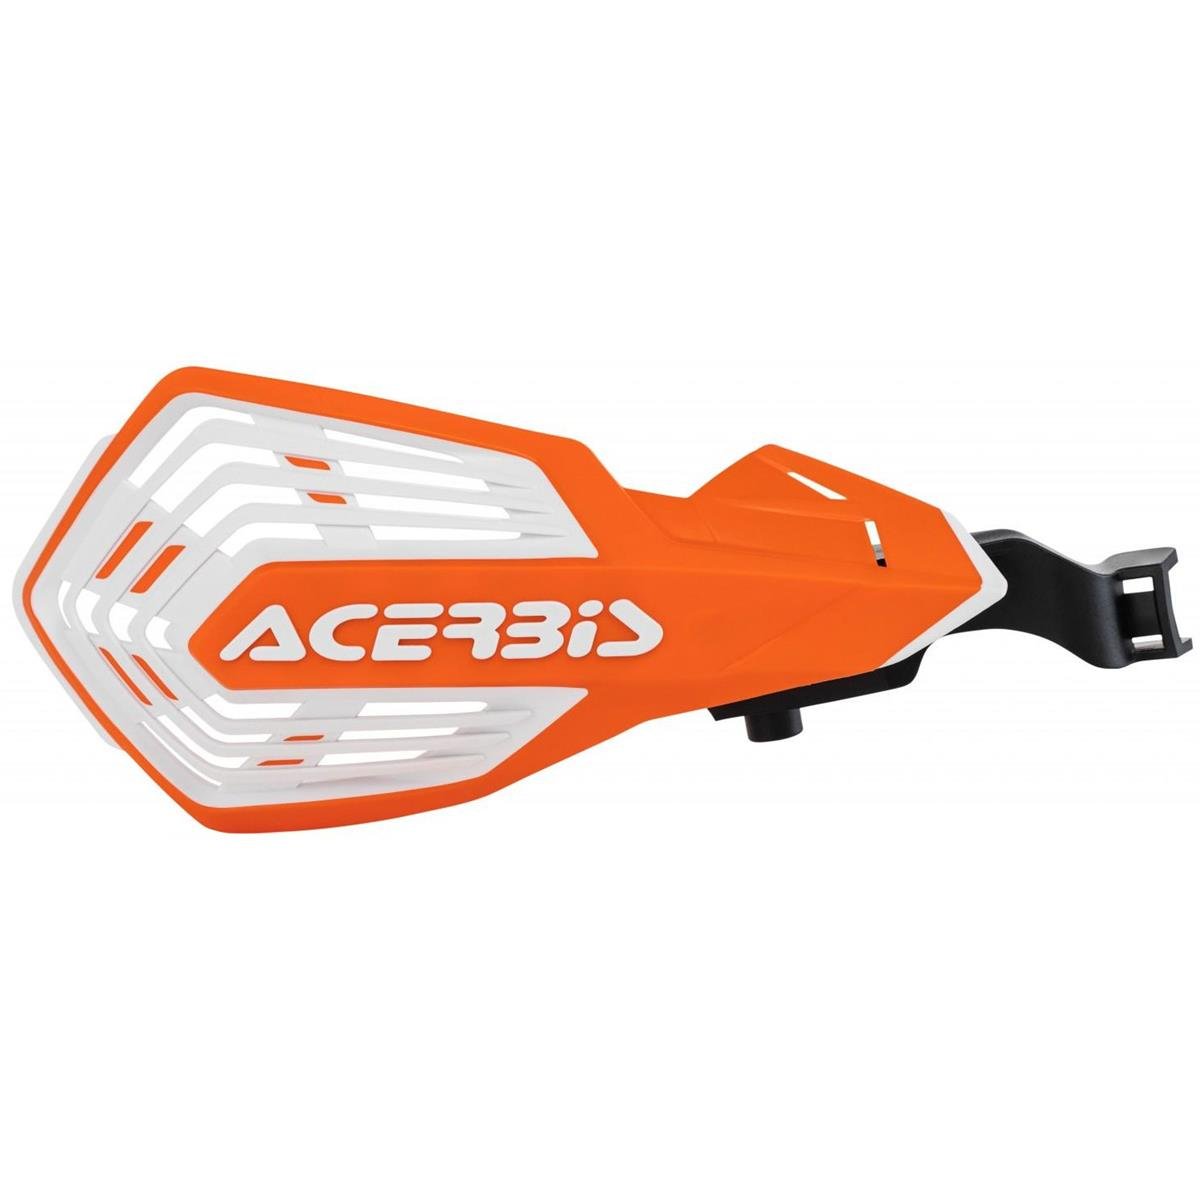 Acerbis Handguards K-Future KTM EXC/EXC-F, SX/SX-F, Orange/White, Incl. Mounting Kit